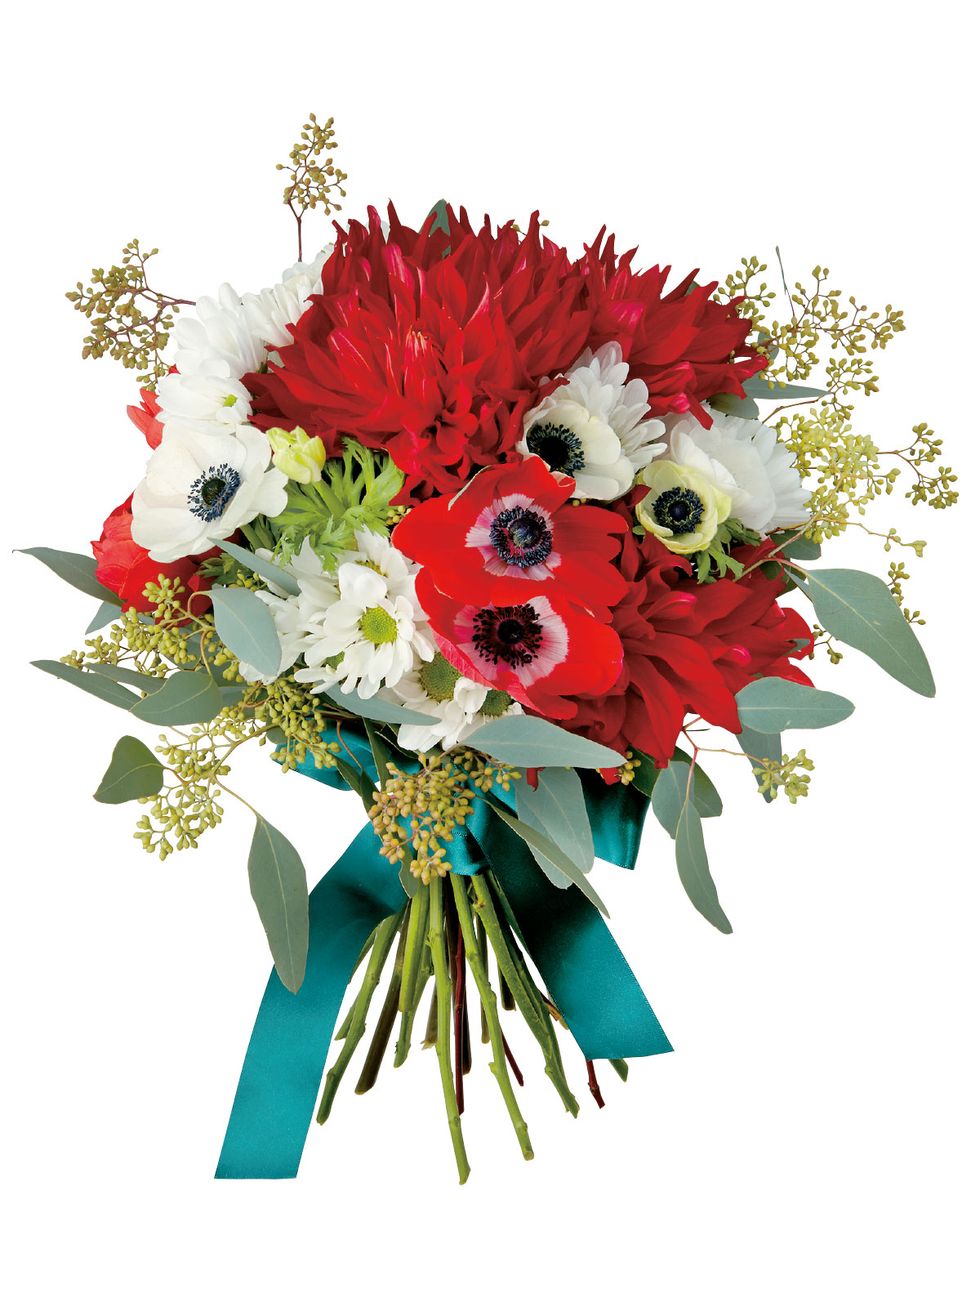 Flower, Bouquet, Flower Arranging, Floristry, Cut flowers, Plant, Floral design, Gerbera, Flowering plant, Anthurium, 